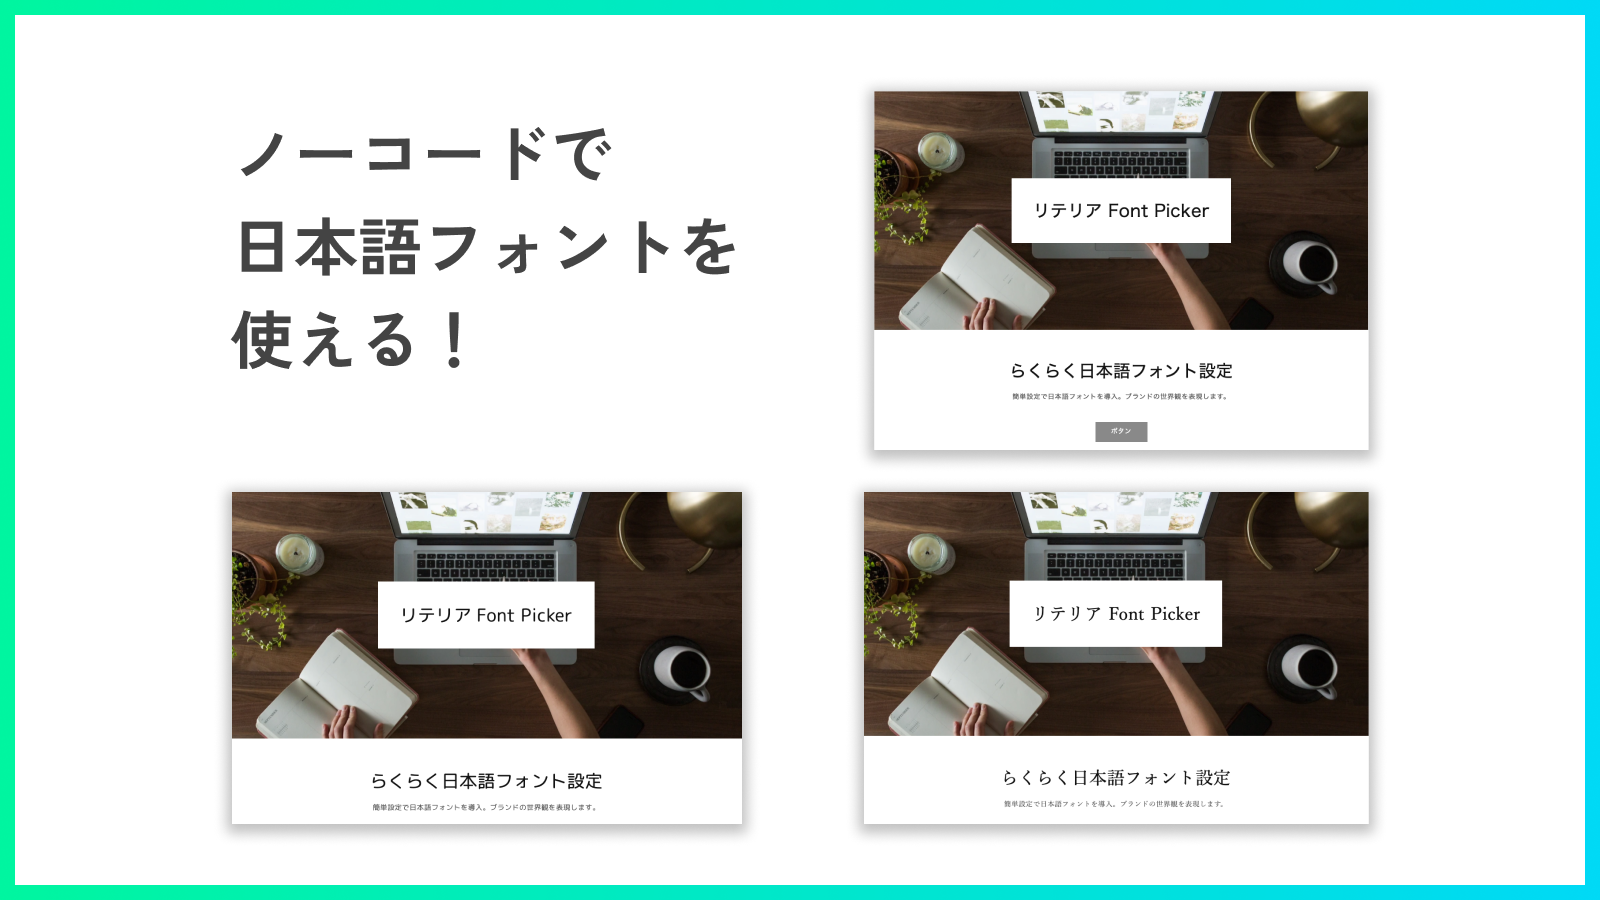 さまざまな日本語フォントをご用意！選択するだけですぐにフォントを変更できます！